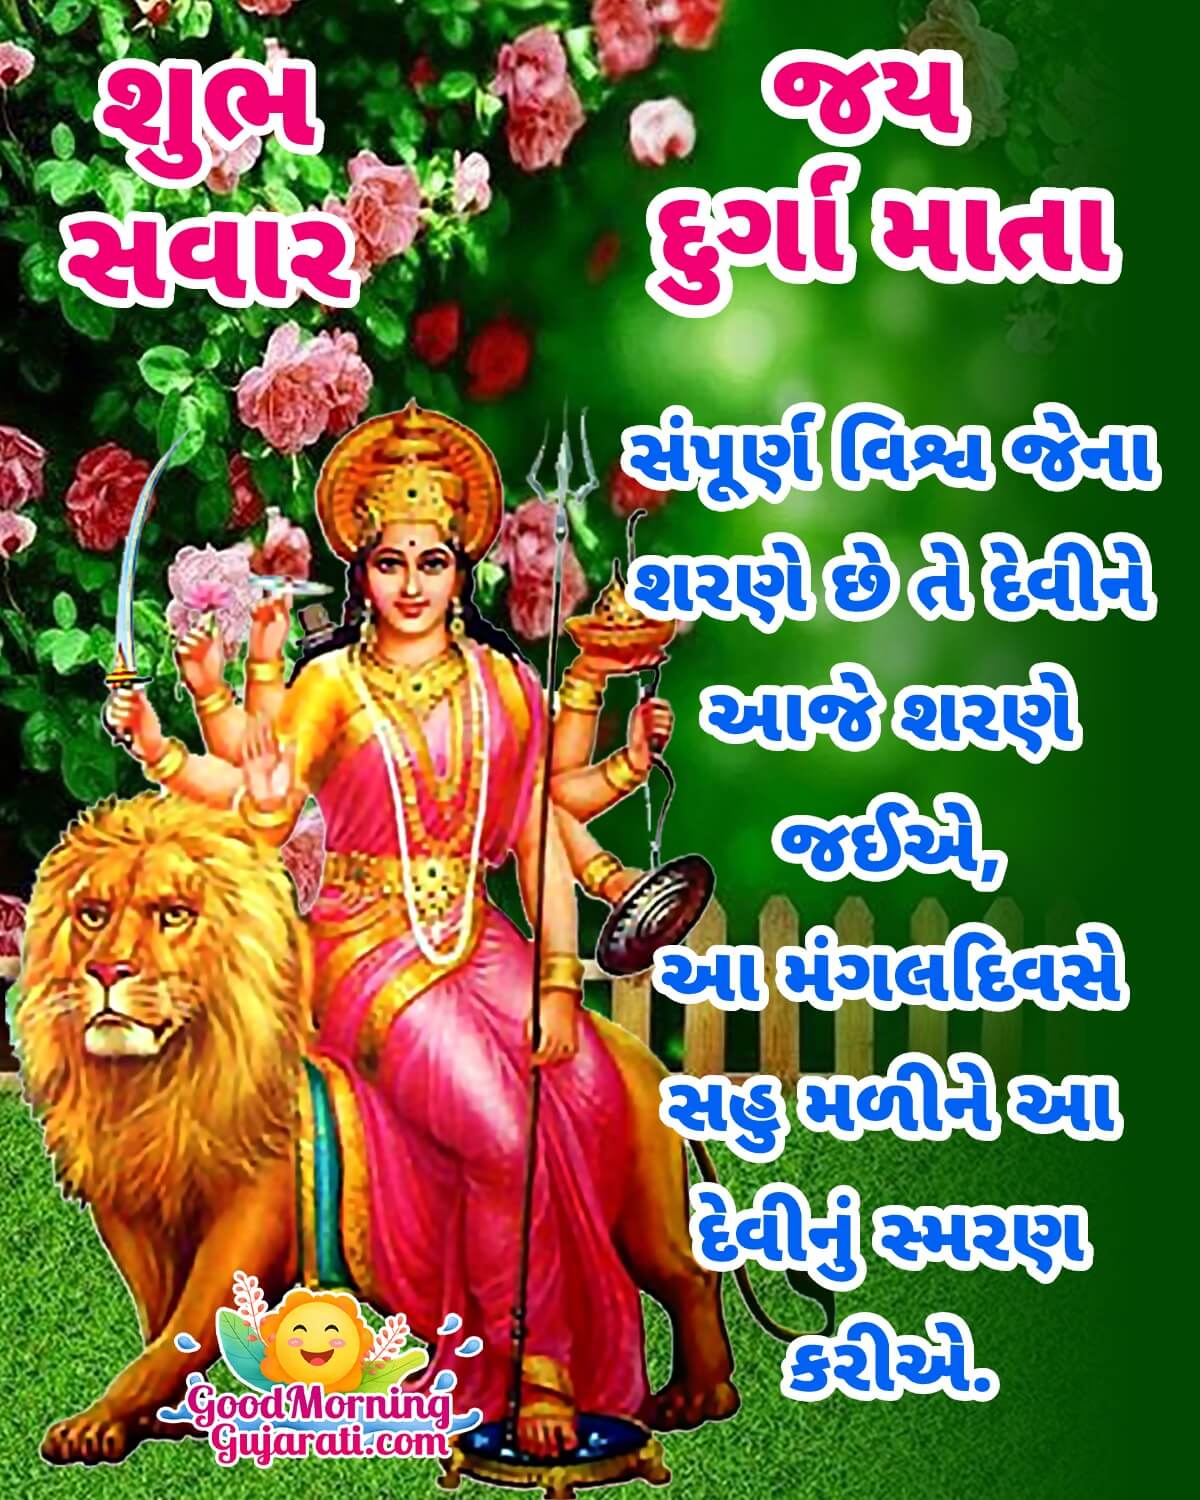 Shubh Sawar Jai Durga Mata In Gujarati